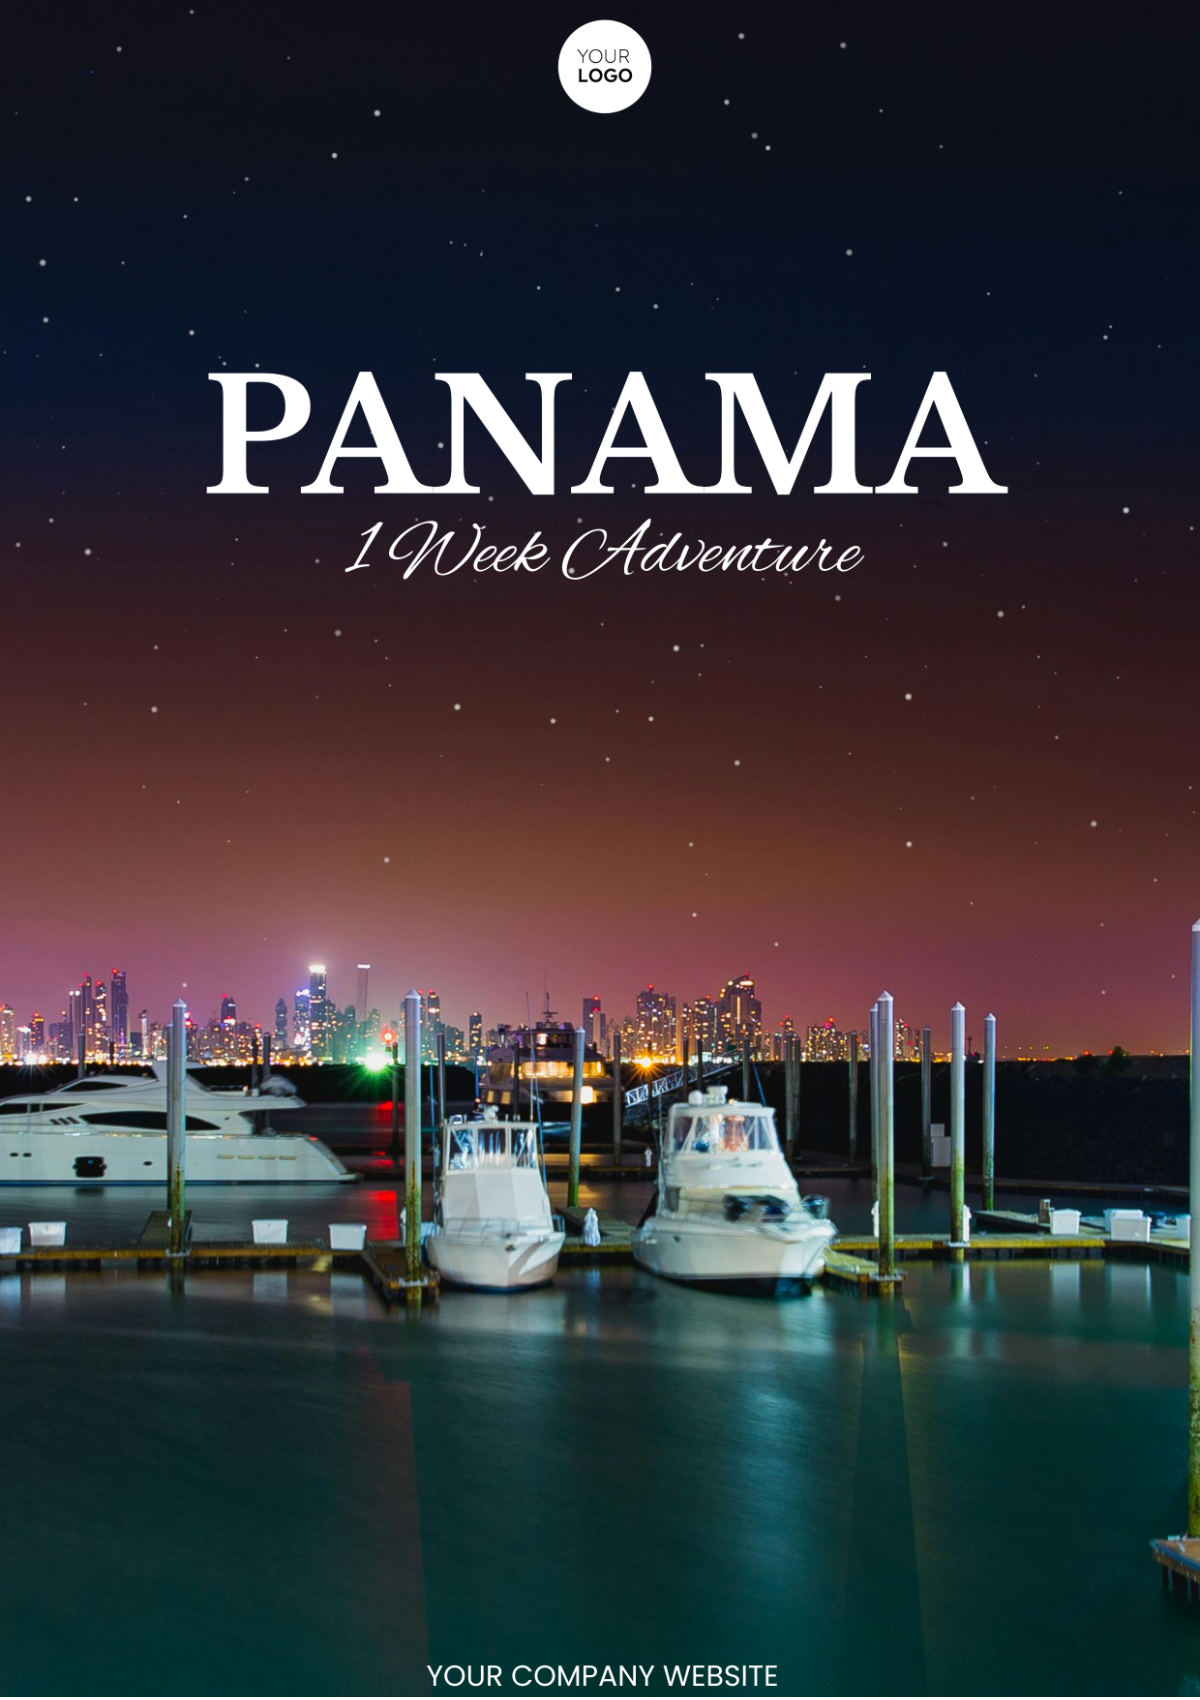 1 Week Panama Itinerary